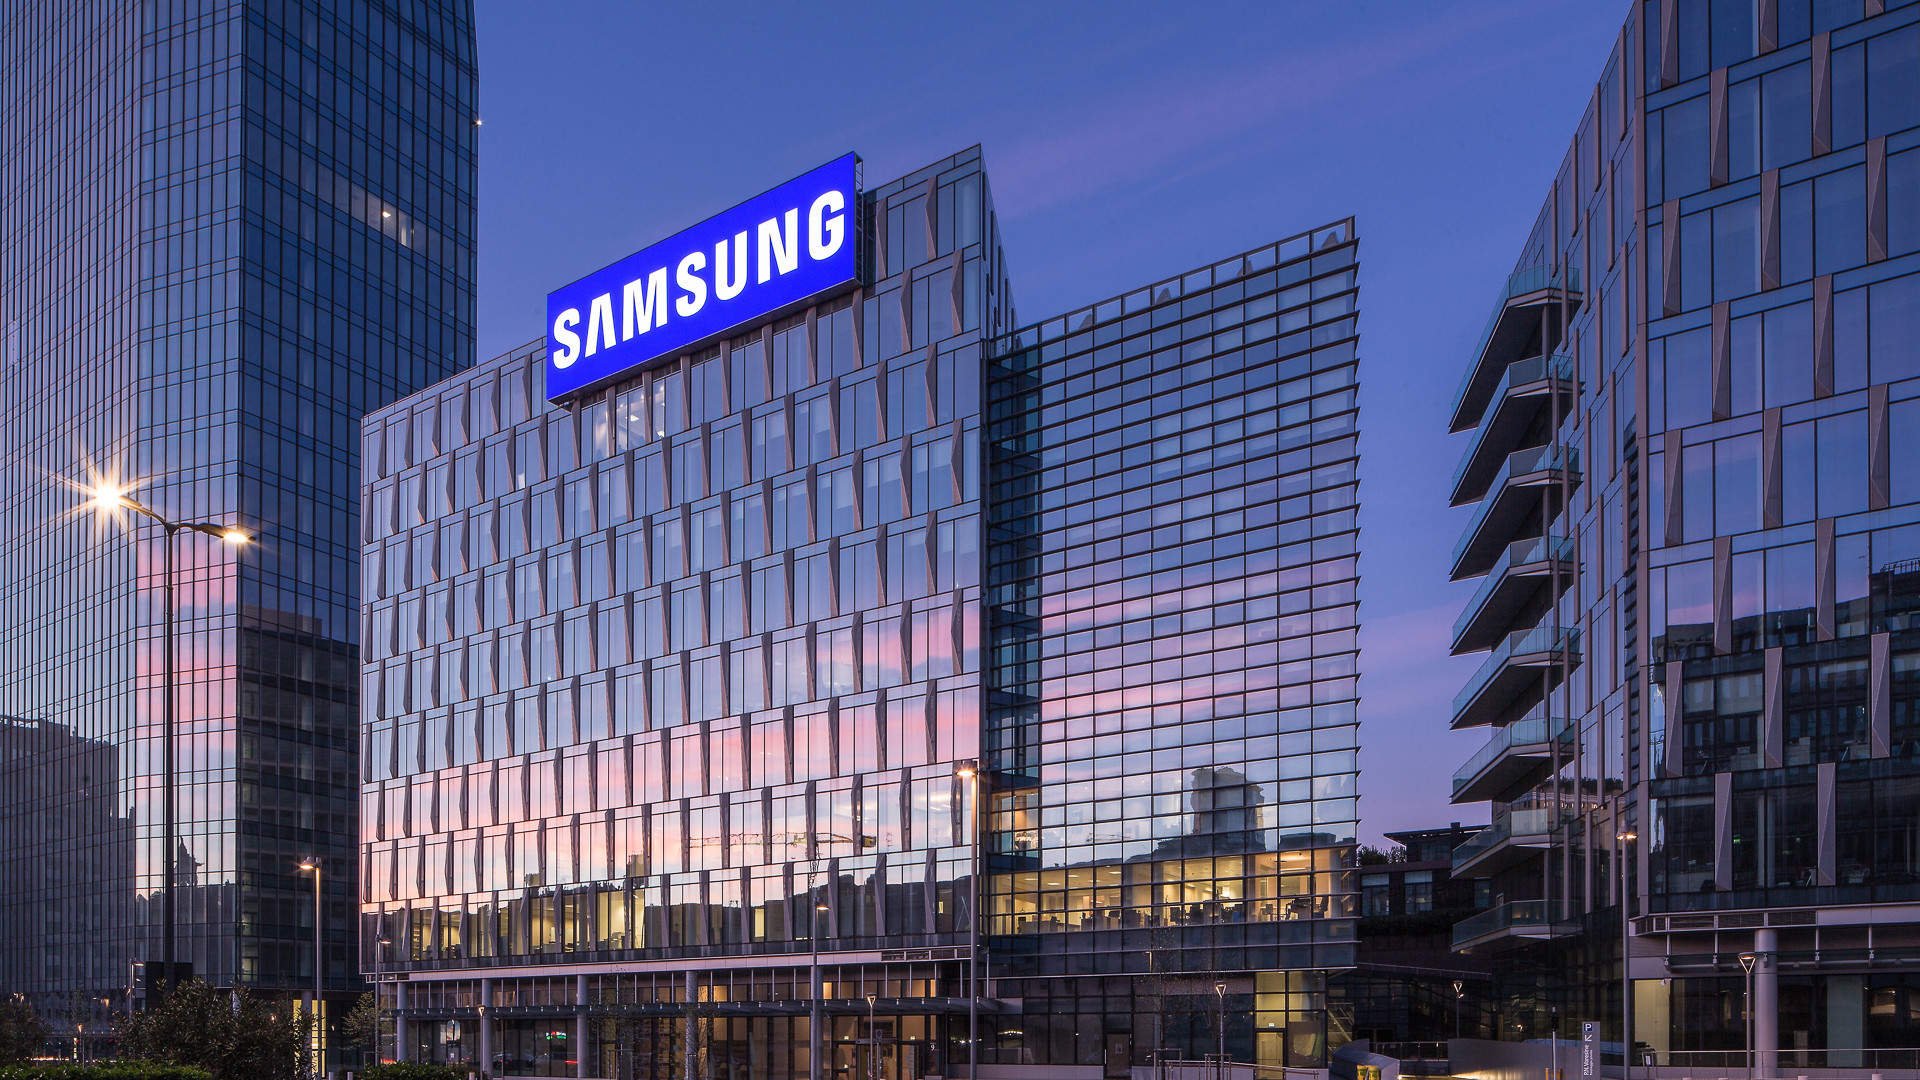 Caso permissão seja negada, Samsung deverá encerrar vendas de componentes para a Huawei.